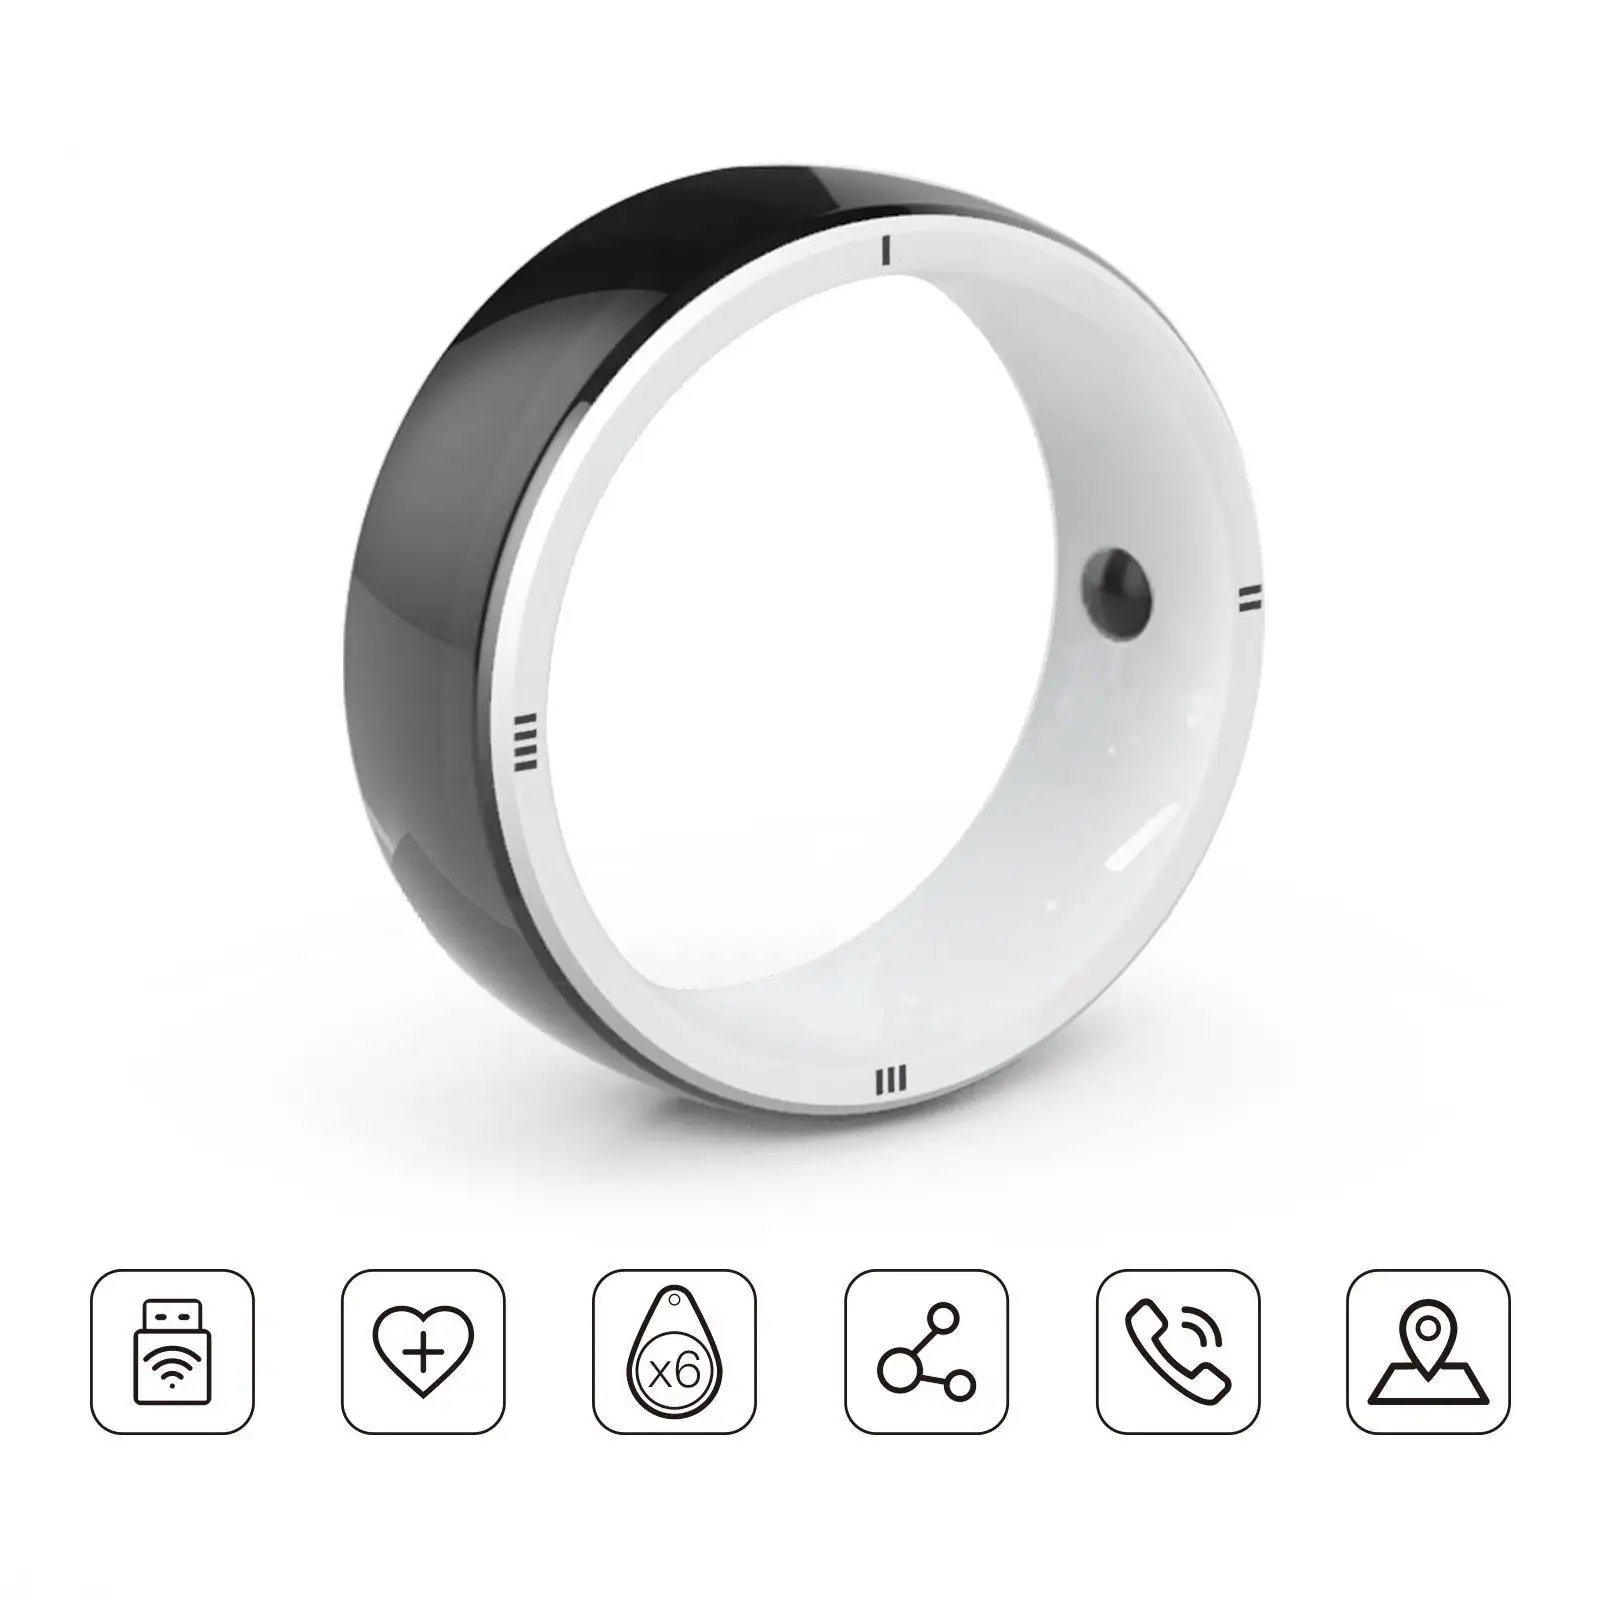 Anello intelligente JAKCOM R5 nuovo anello intelligente Super valore come bere acqua ricorda orologio mouse pad tessuto tda8920 marca rex cavo personalizzato